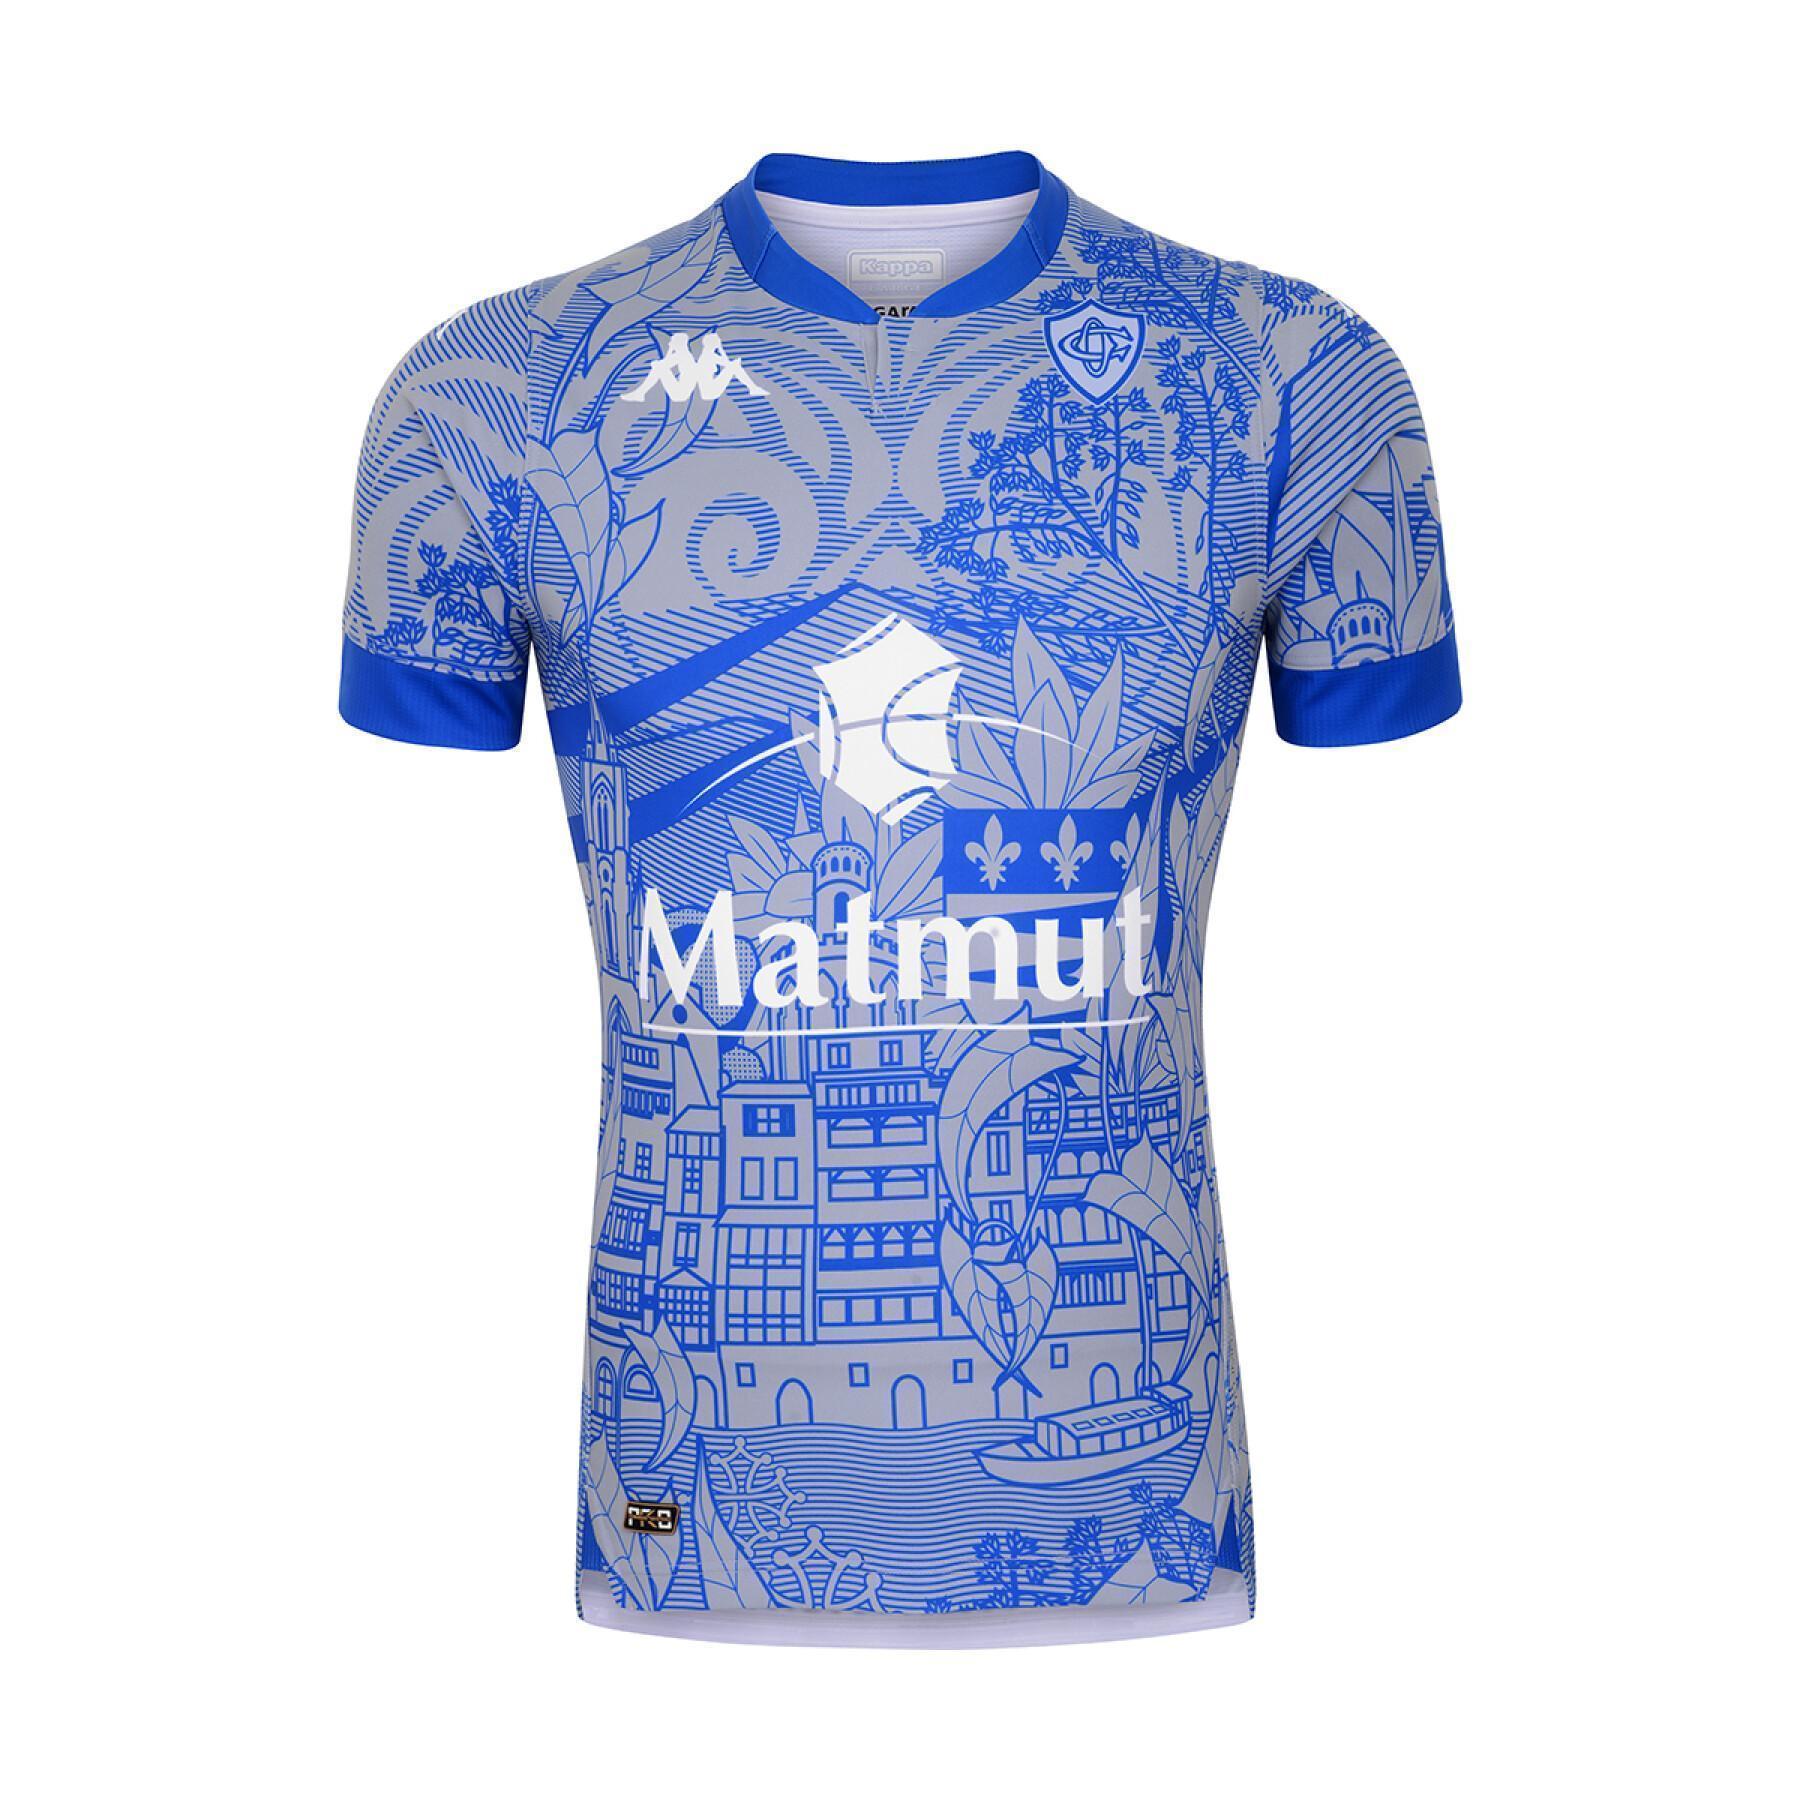 Auténtica tercera camiseta Castres Olympique 2020/21